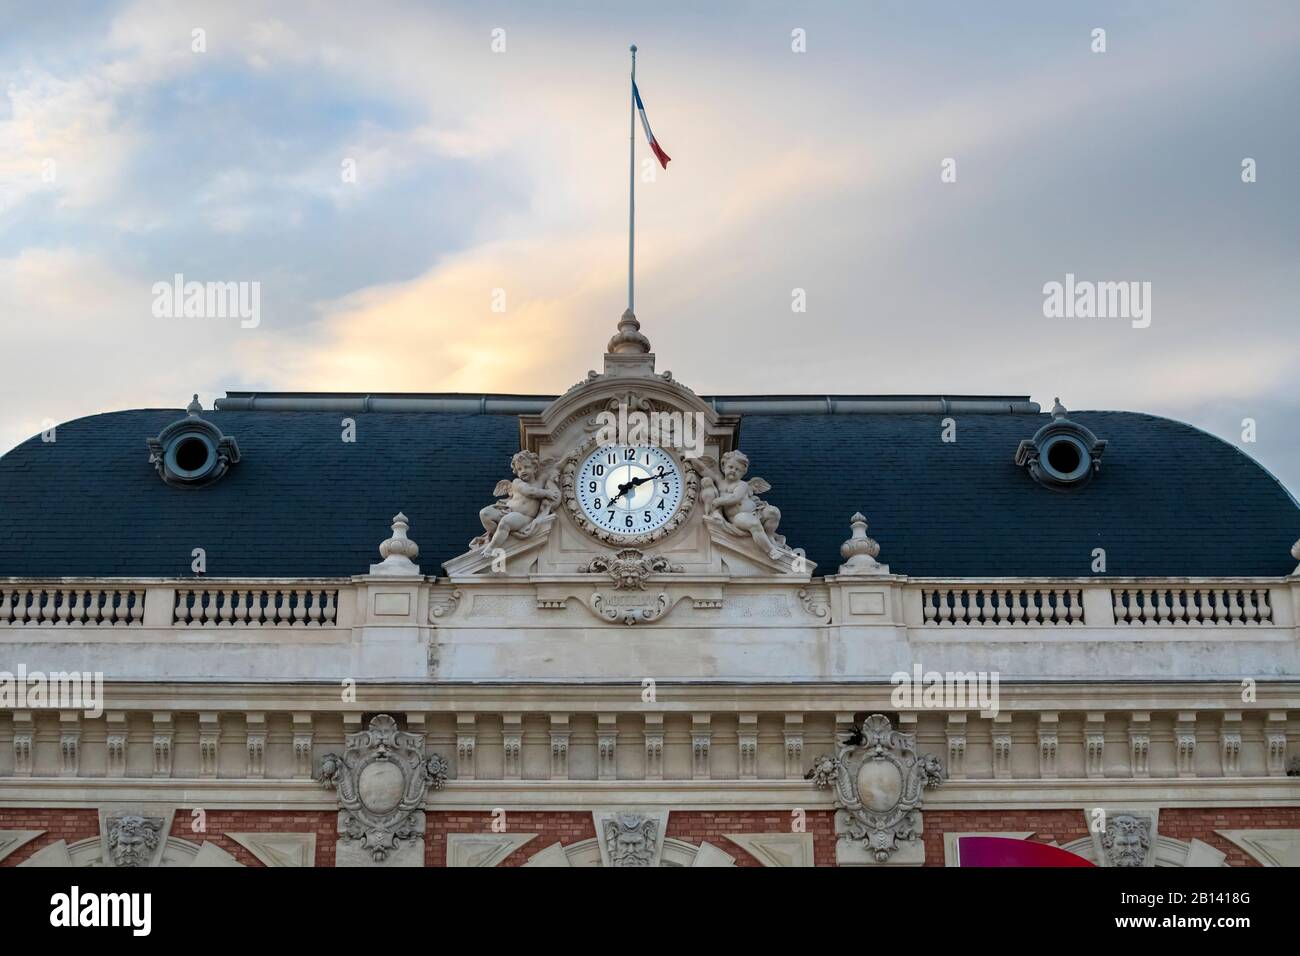 Lo storico edificio ferroviario con una bandiera francese che vola sopra, sulla Costa Azzurra nella città di Nizza, Francia. Foto Stock